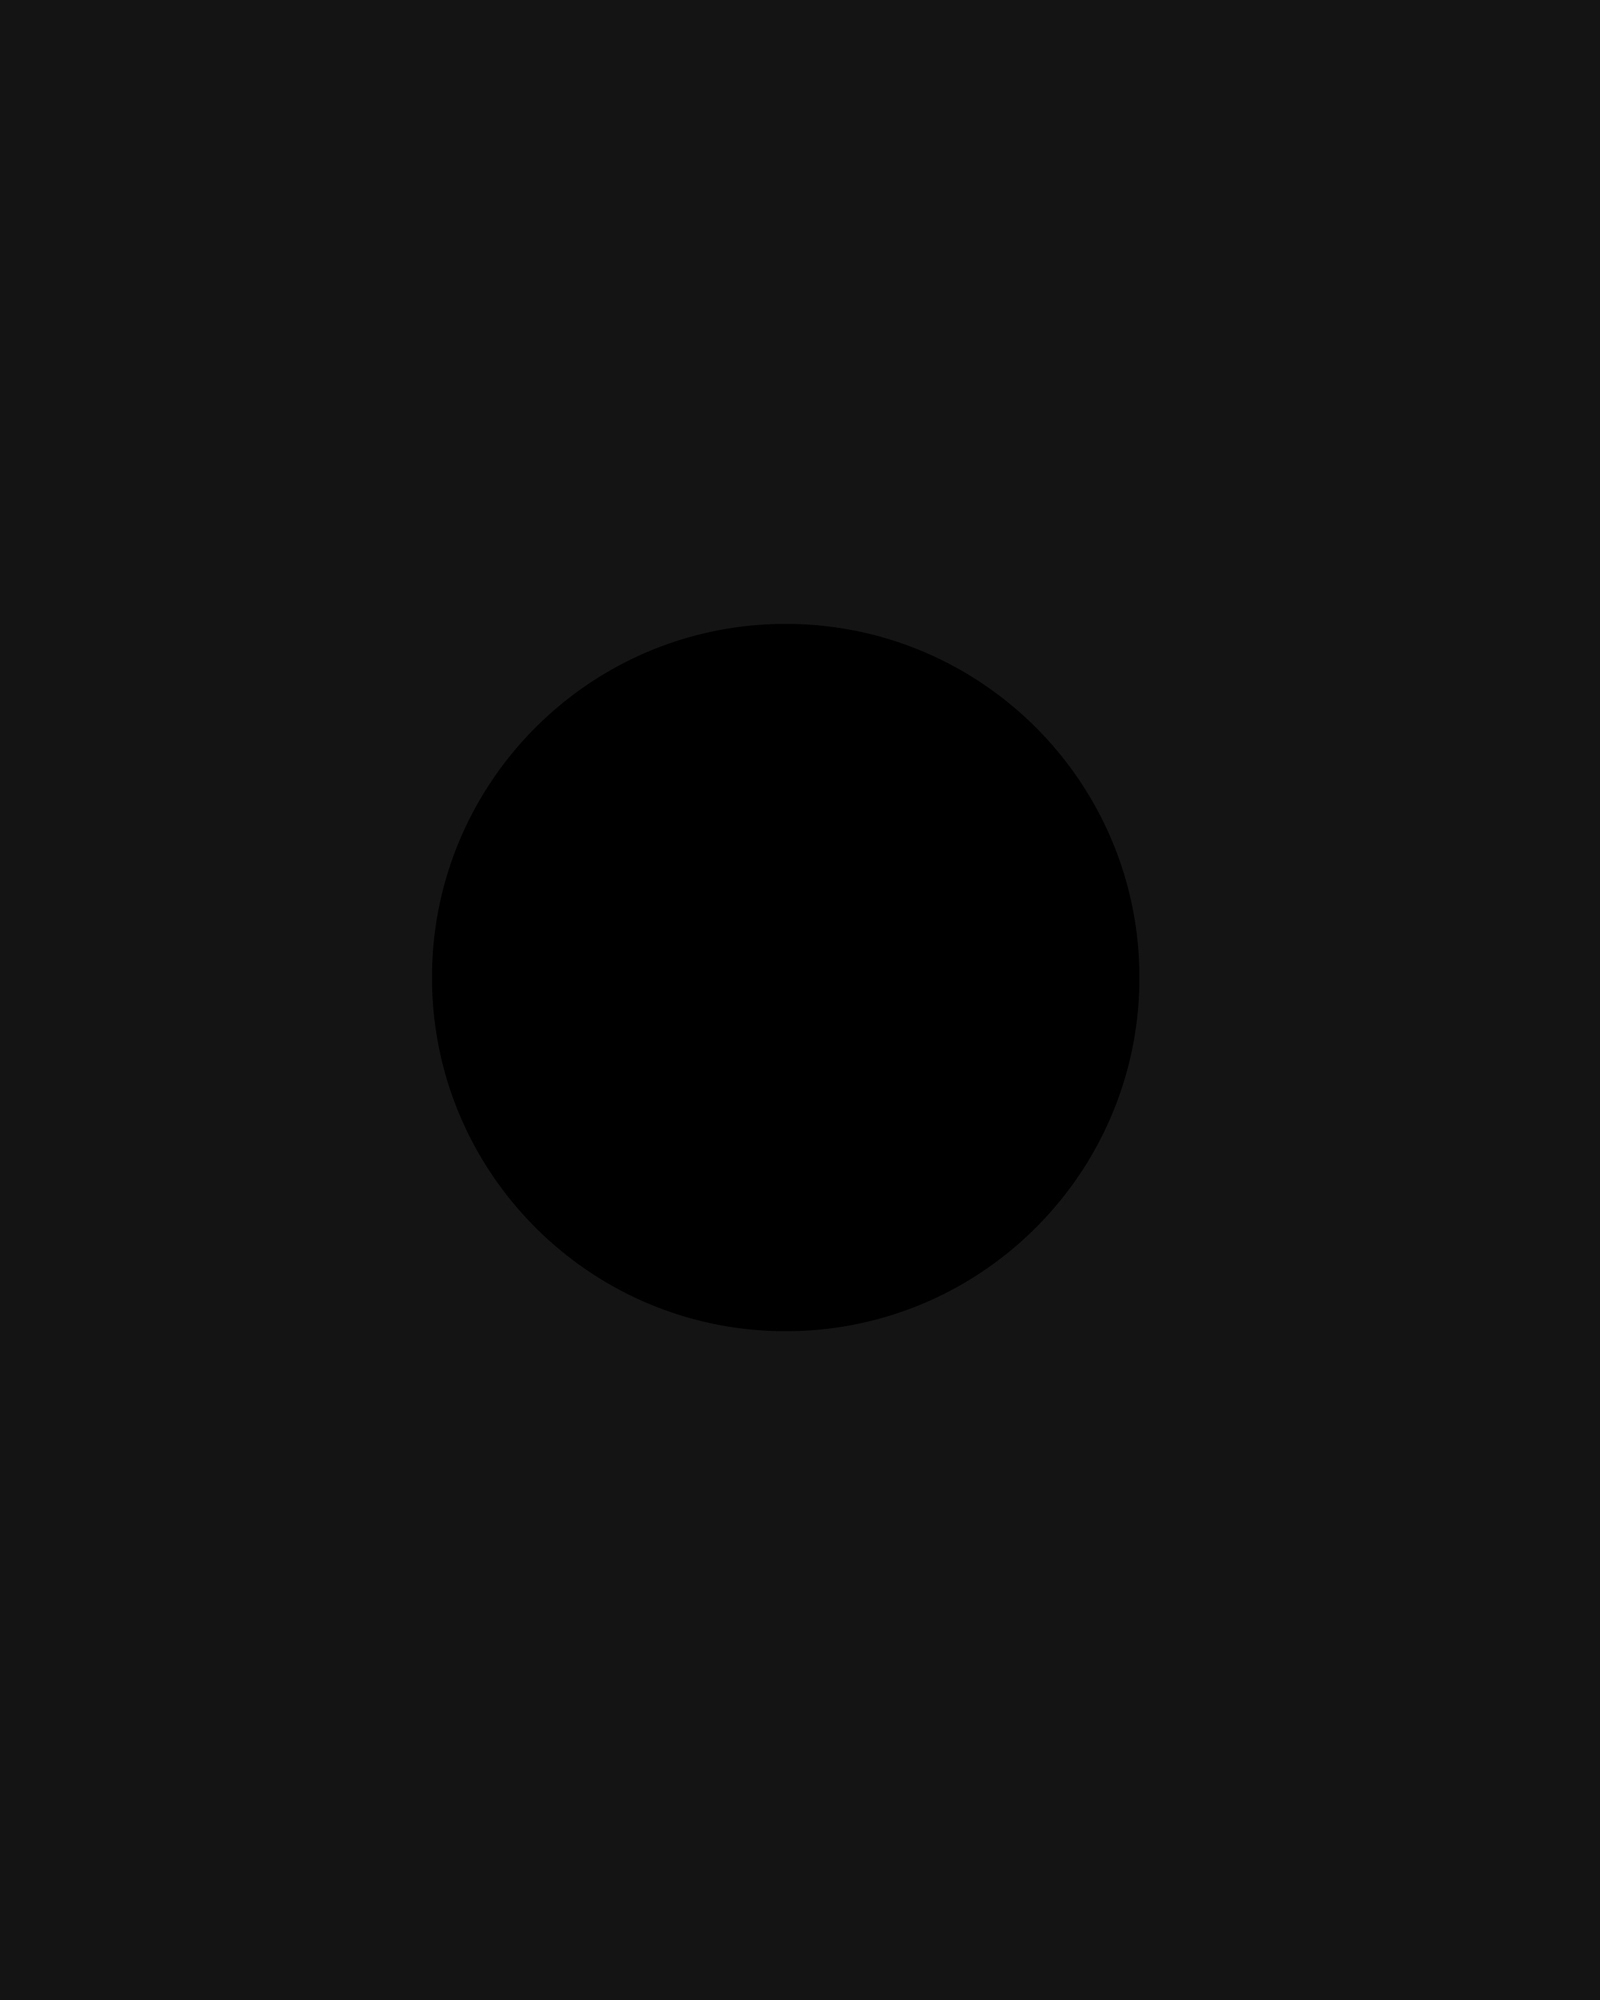 A black plane surrounding an even blacker circle.